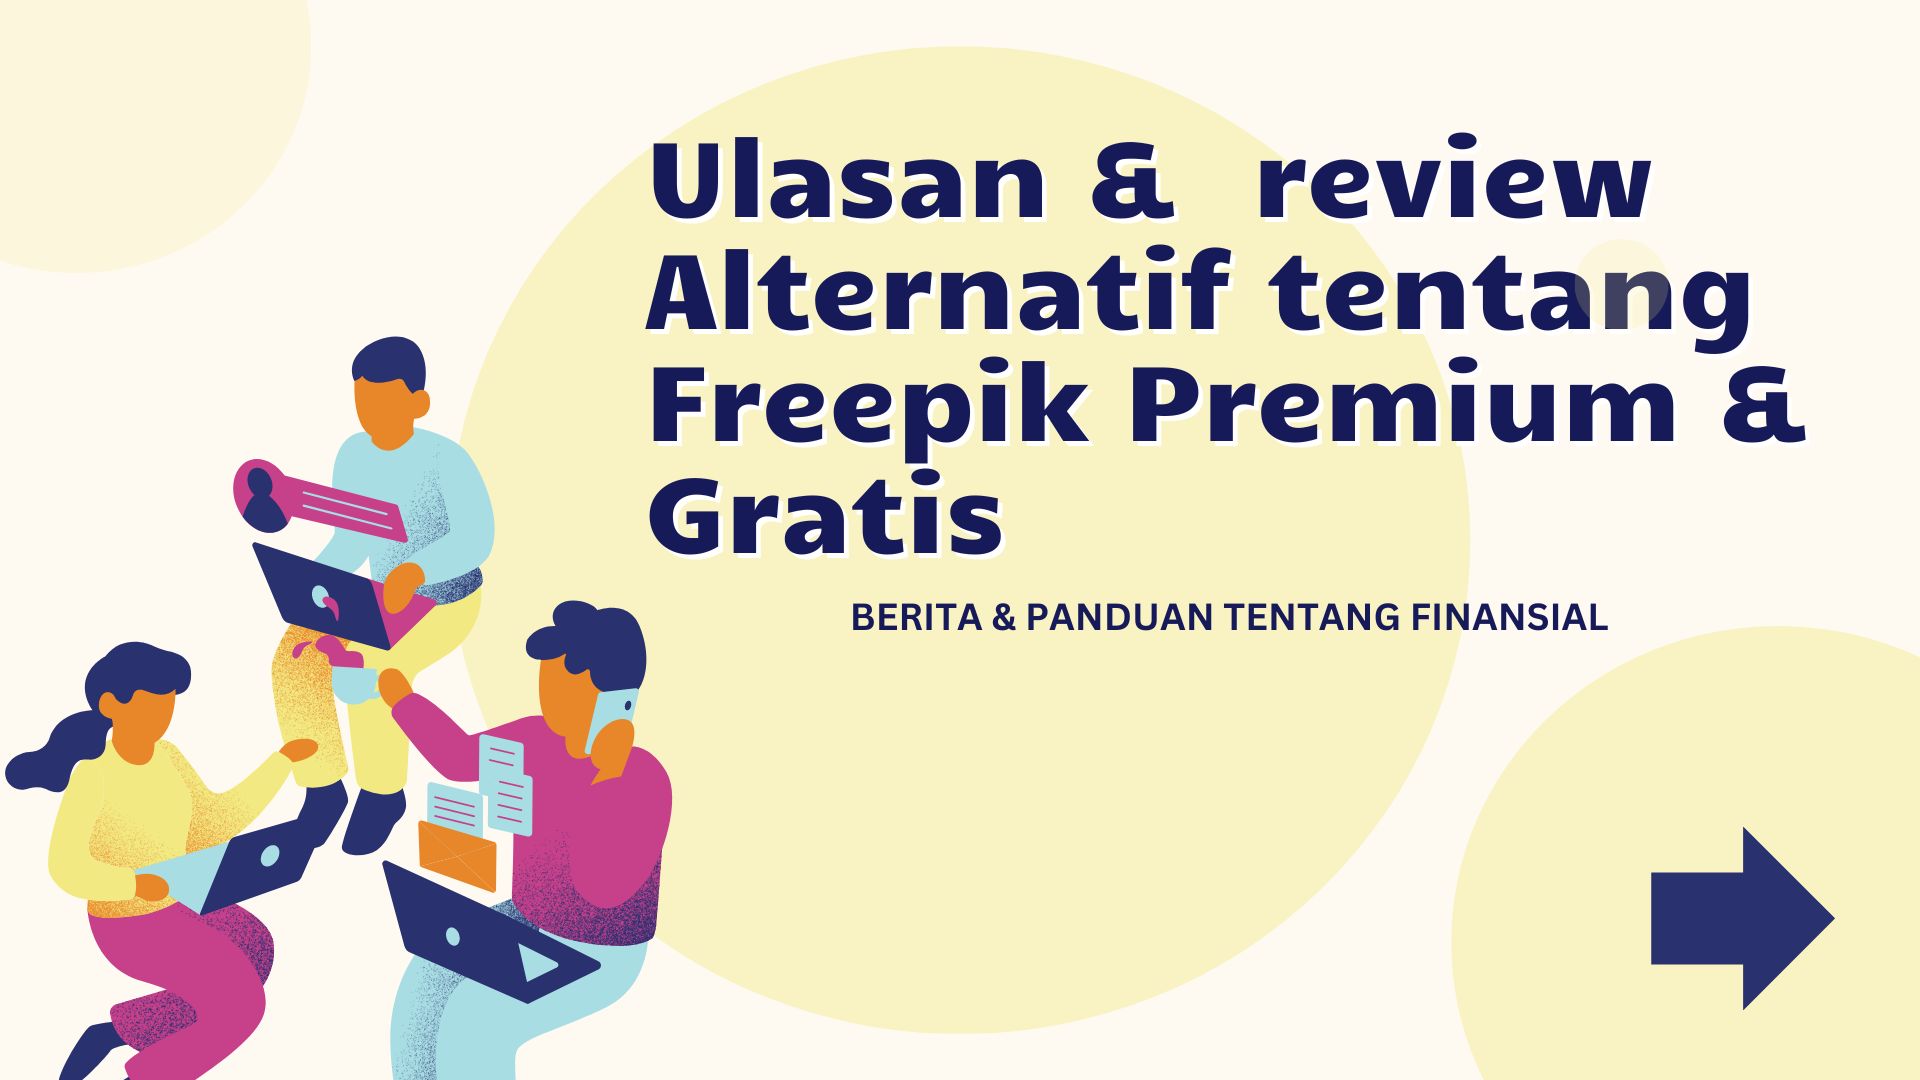 Ulasan &  review Alternatif tentang Freepik Premium & Gratis